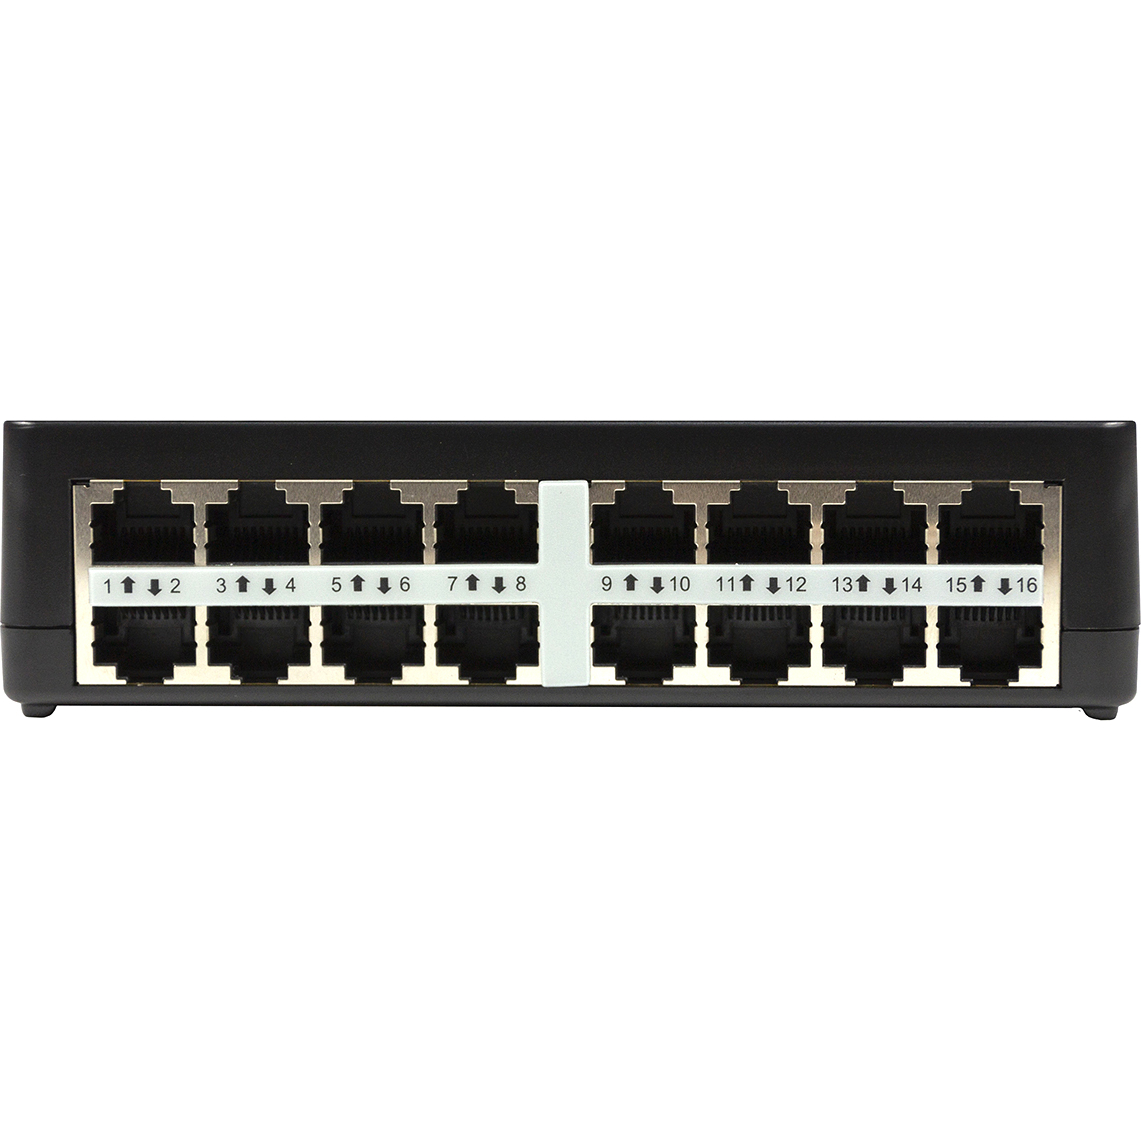 Link os. Коммутатор 10 дюймов 16 портов. Коммутатор неуправляемый 16-ти портовый. D link Ethernet Switch 860 16 Port. Коммутаторы по ценам.